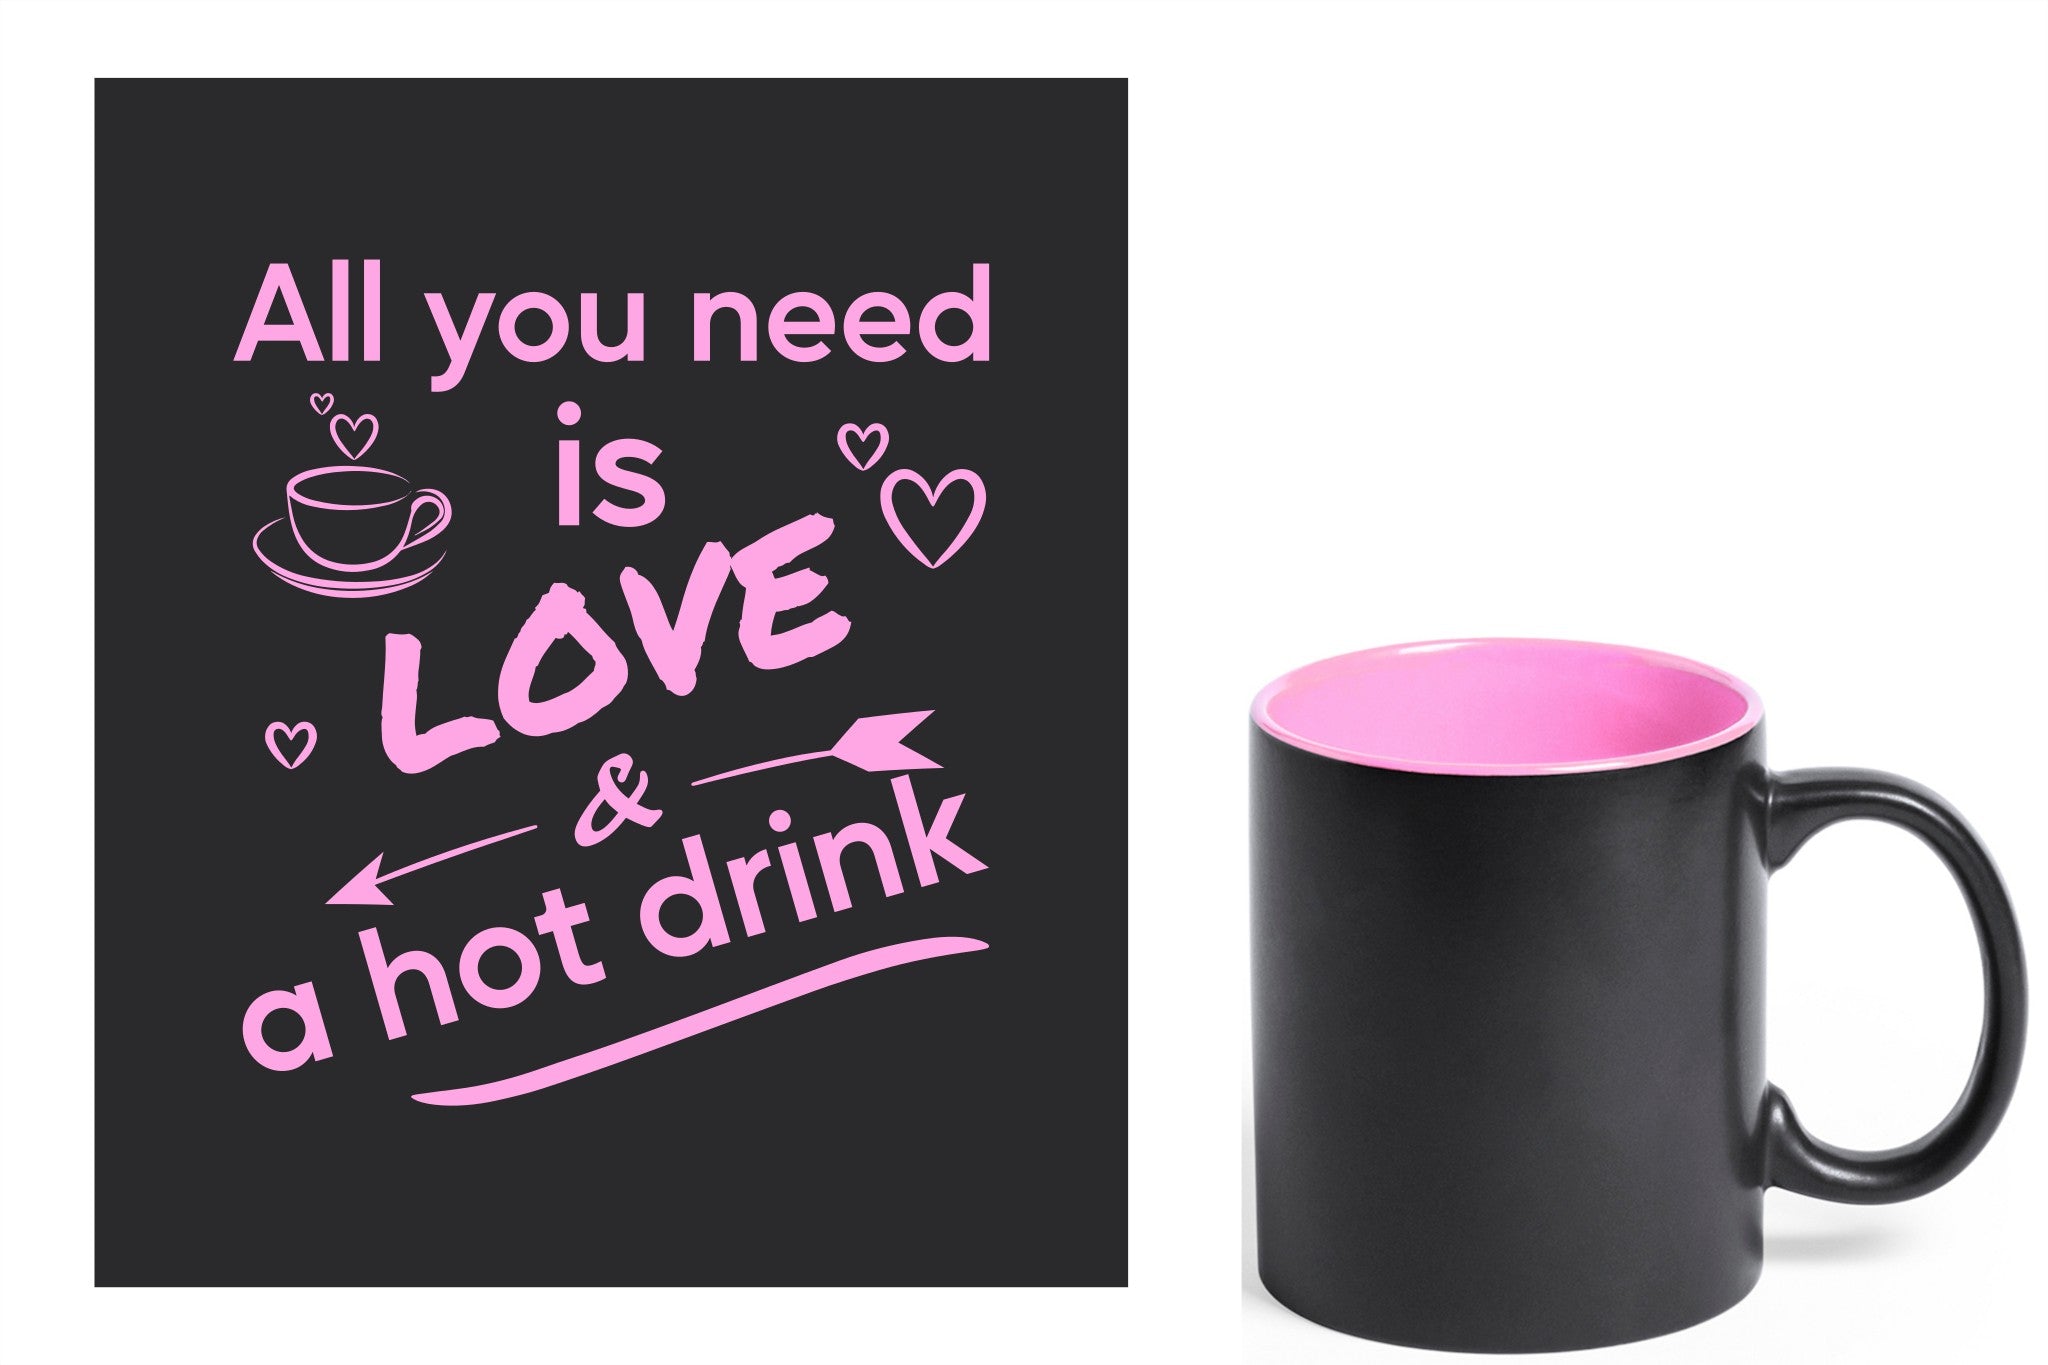 zwarte keramische mok met roze gravure  'All you need is love & a hot drink'.